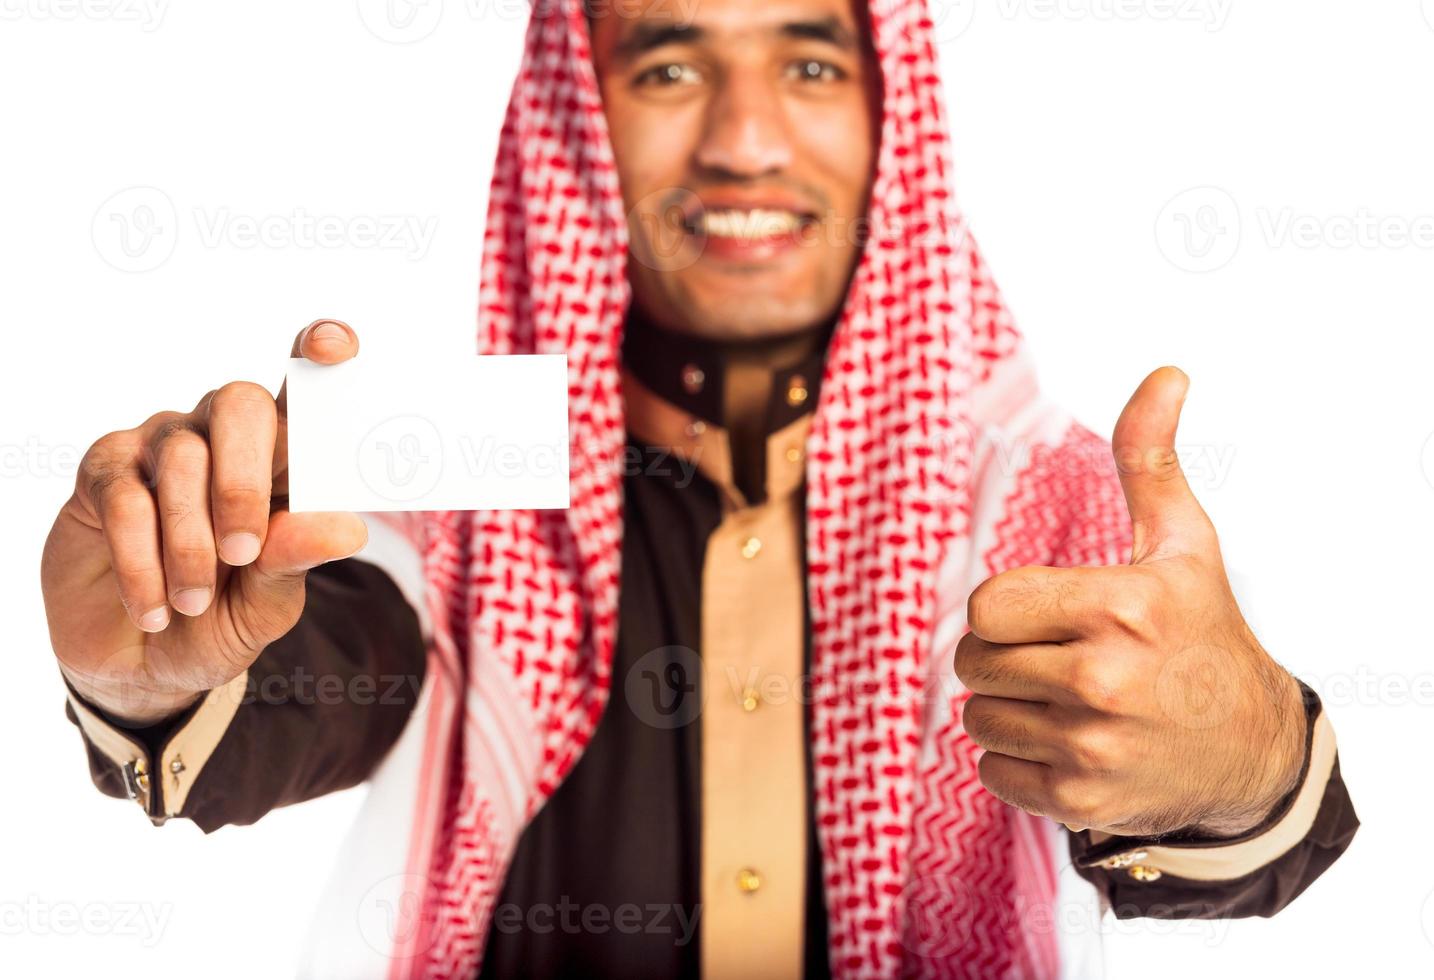 joven sonriente árabe demostración negocio tarjeta en mano aislado en blanco foto